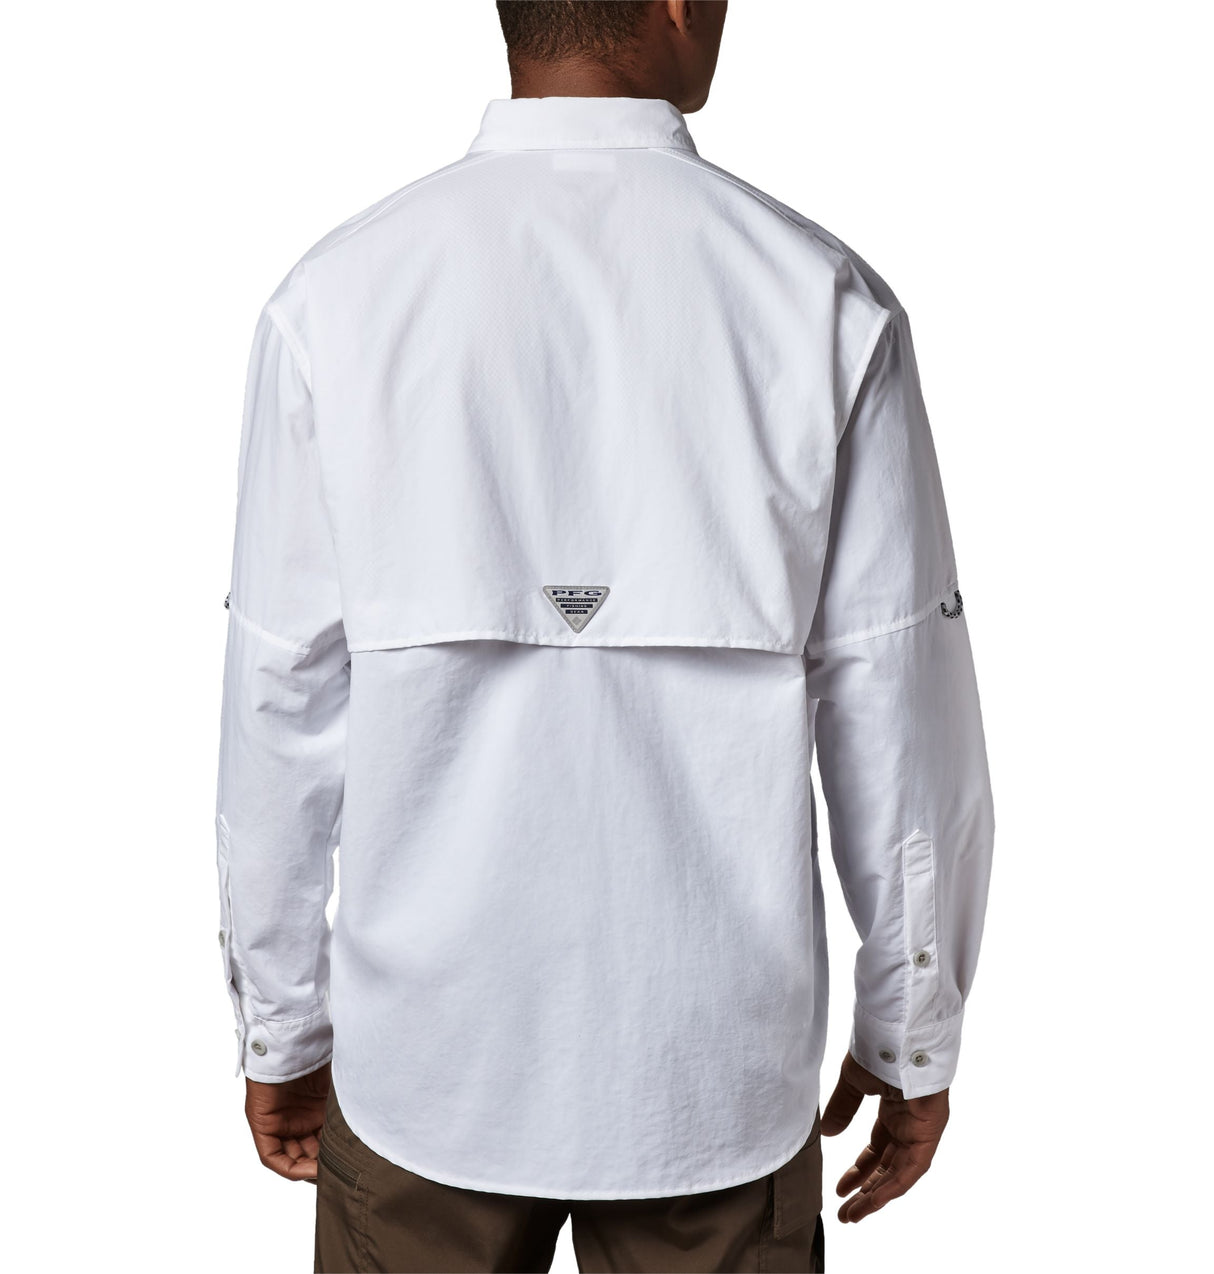 Columbia Men’s PFG Bahama™ II Long Sleeve Shirt